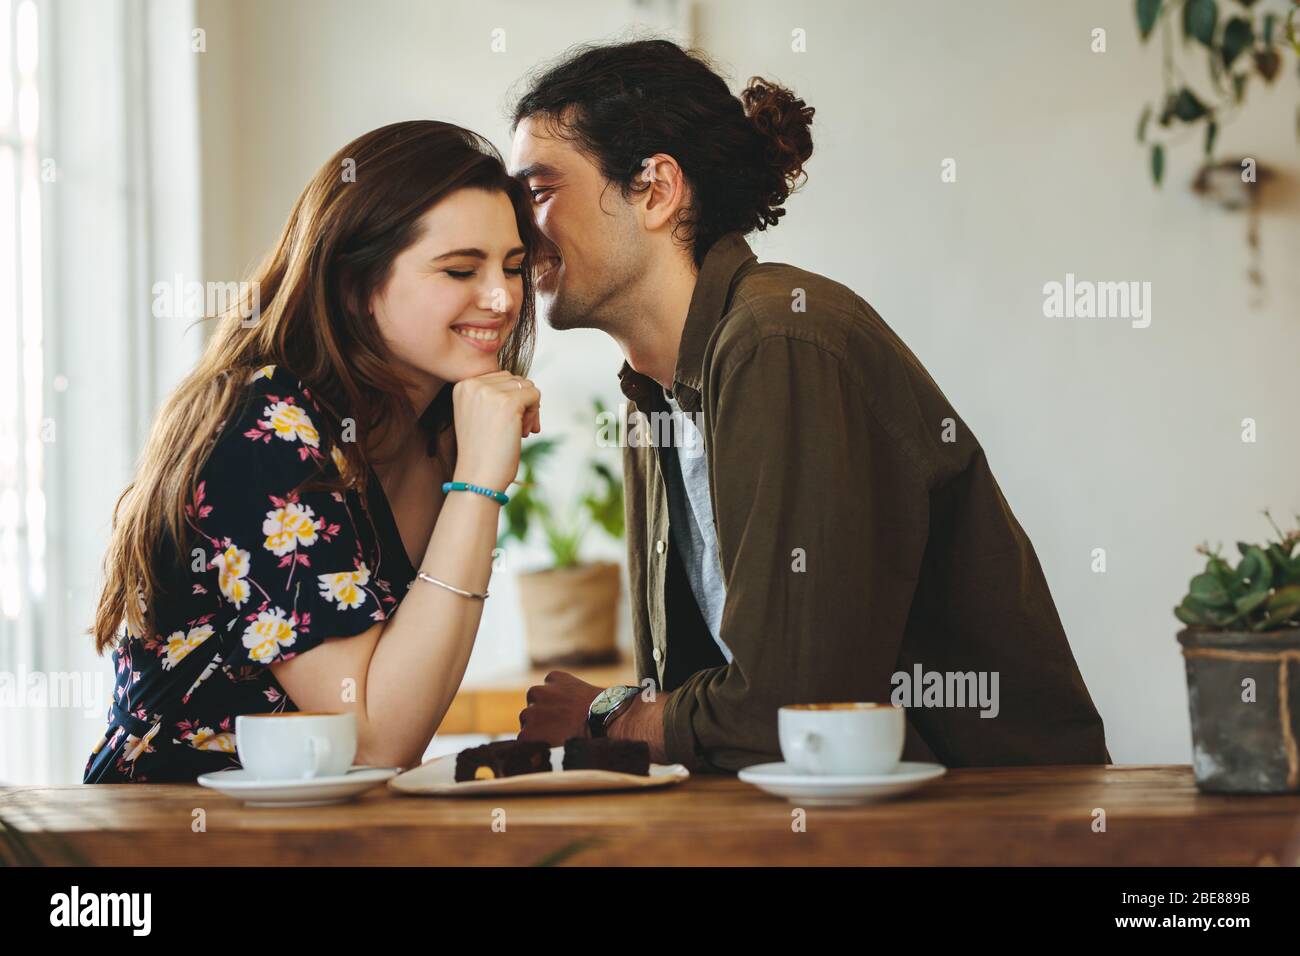 Schönes liebevolles Paar, das in einem Café sitzt und sich in einem Gespräch amüsst. Der Mann flüstert seiner Freundin an einem Kaffeetisch liebevoll ins Ohr. Stockfoto